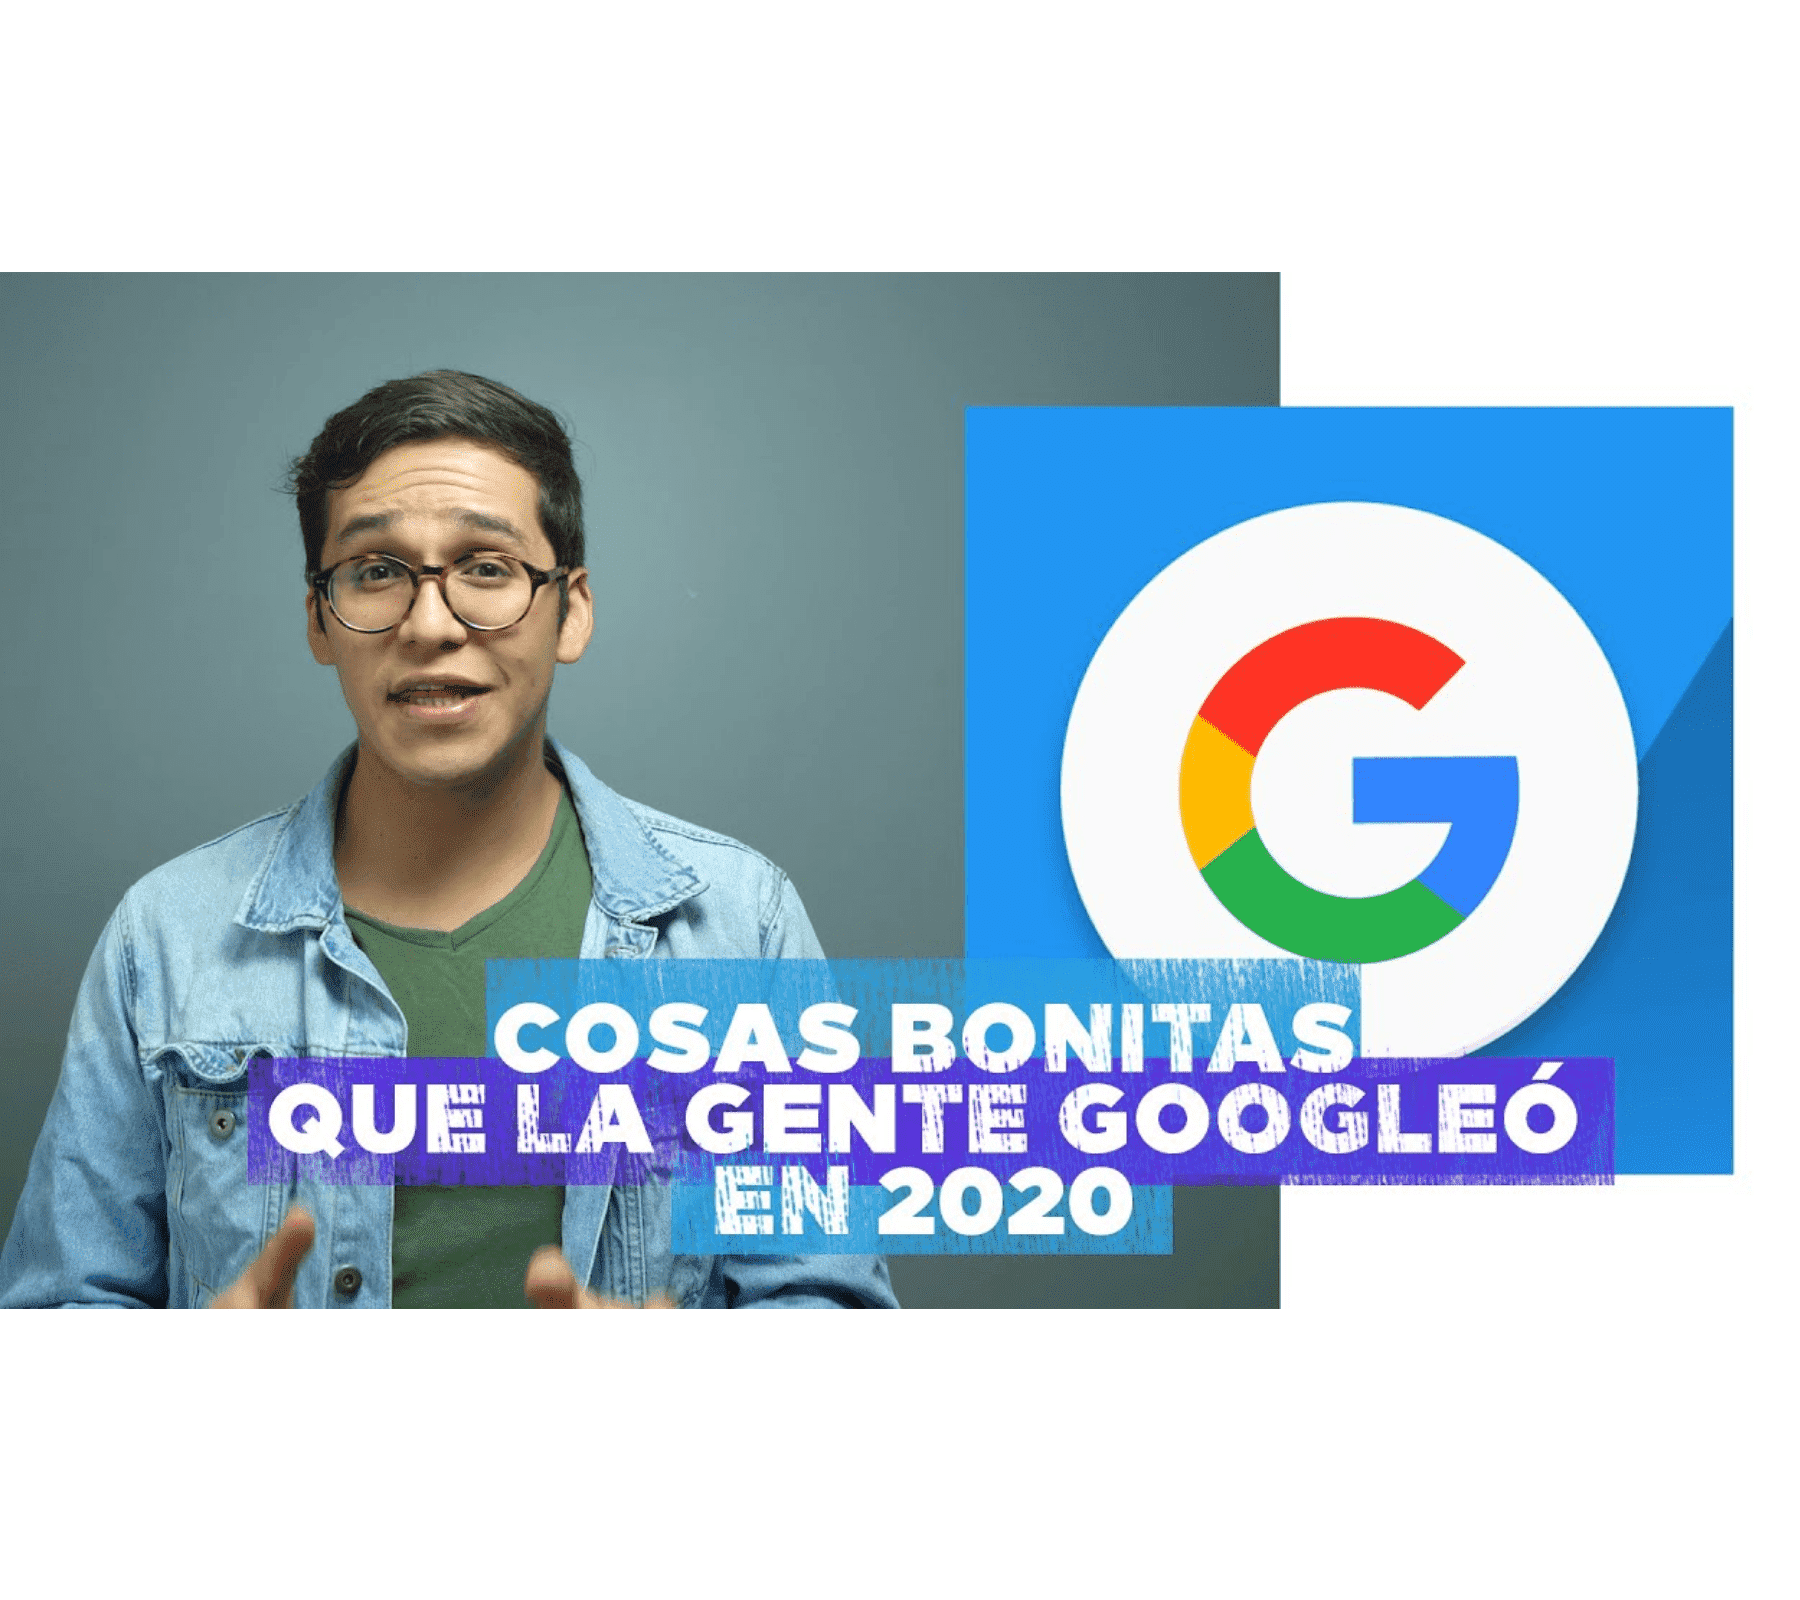 Cosas bonitas en google 2020